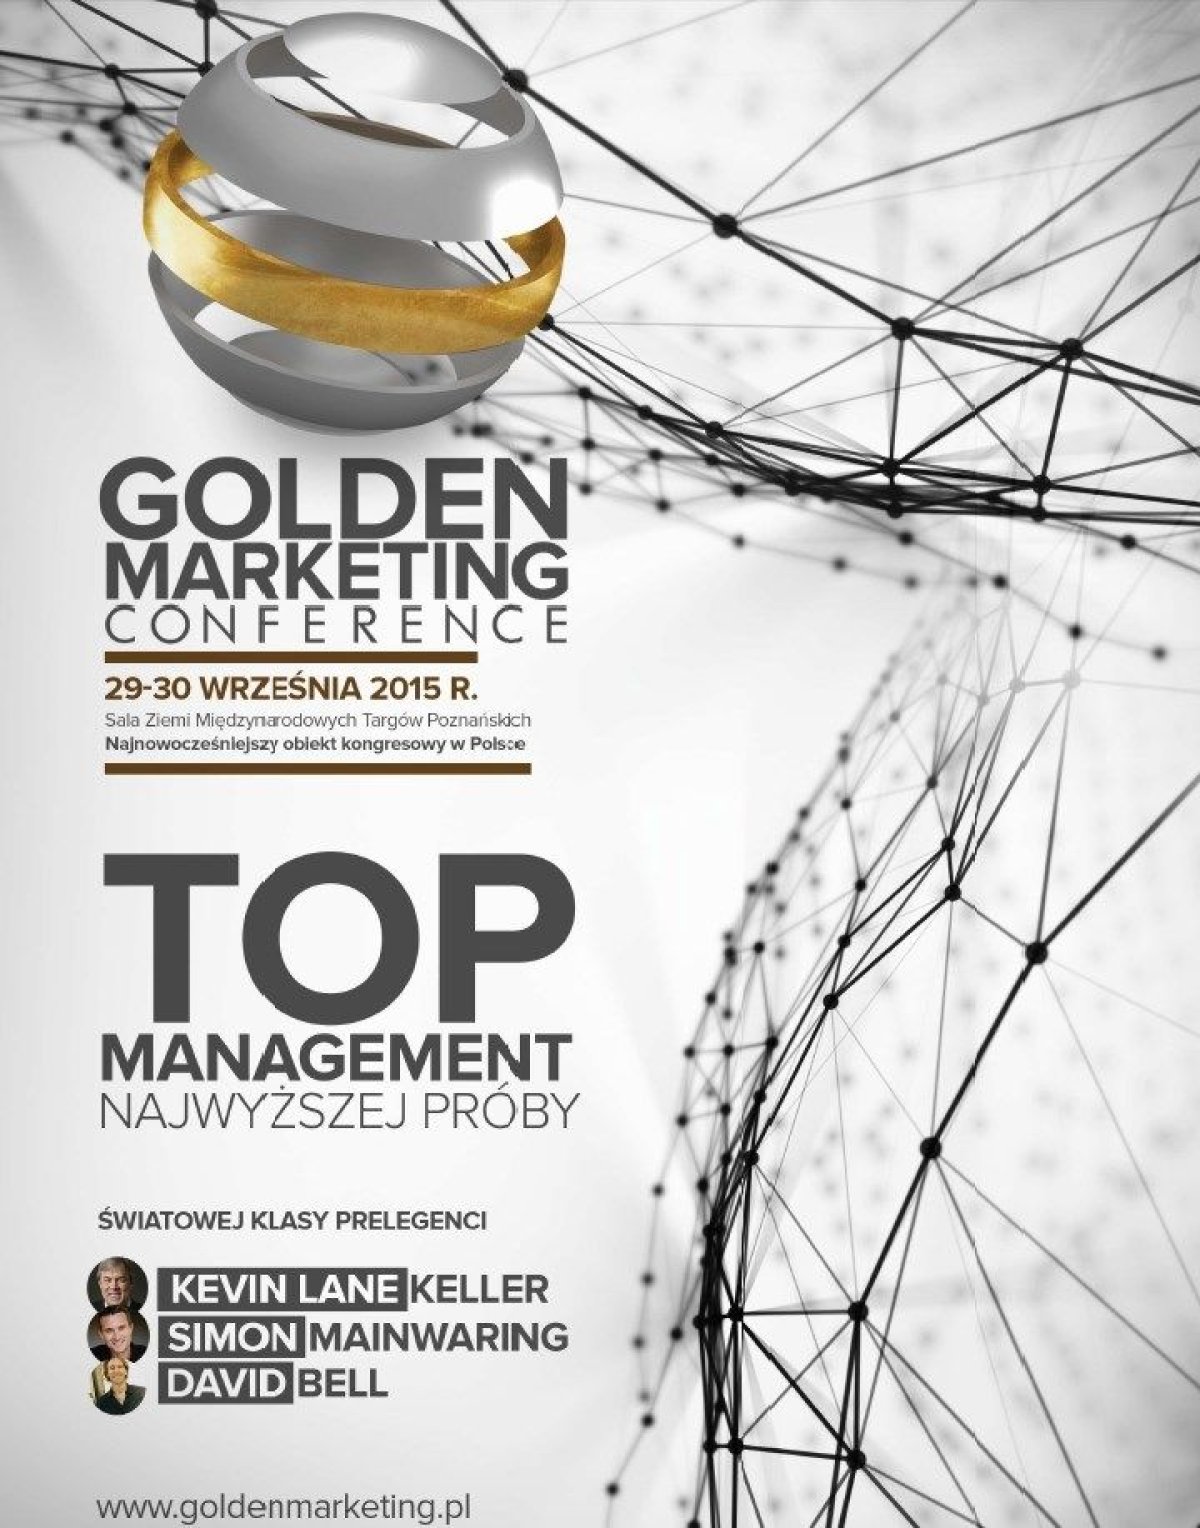 Złote zasady marketingu - Golden Marketing Conference już we wrześniu